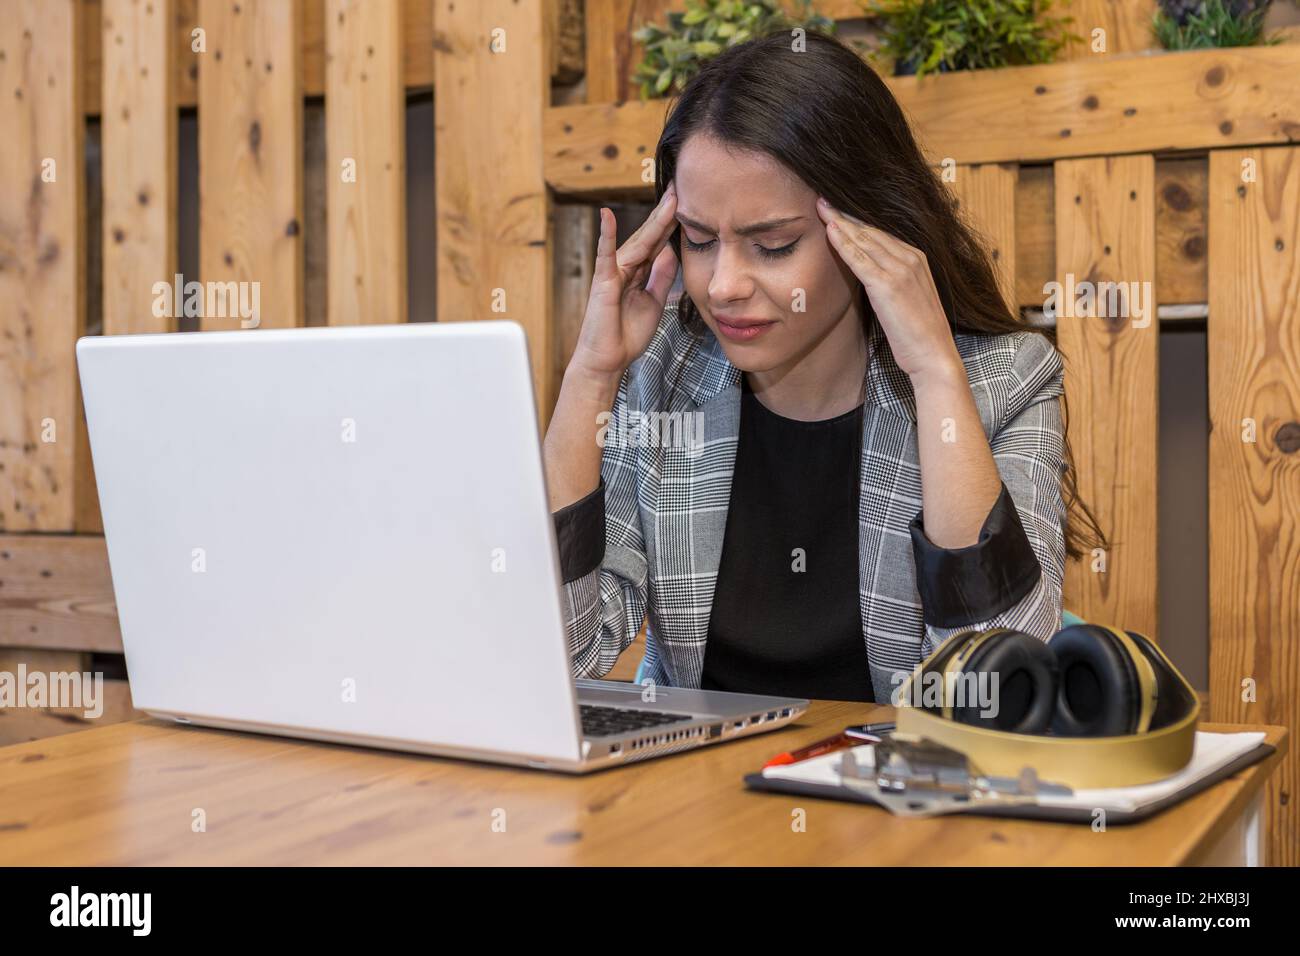 Une jeune femme fatiguée qui souffre de maux de tête en travaillant sur un netbook équipé d'un presse-papiers et d'un casque sans fil dans un café Banque D'Images